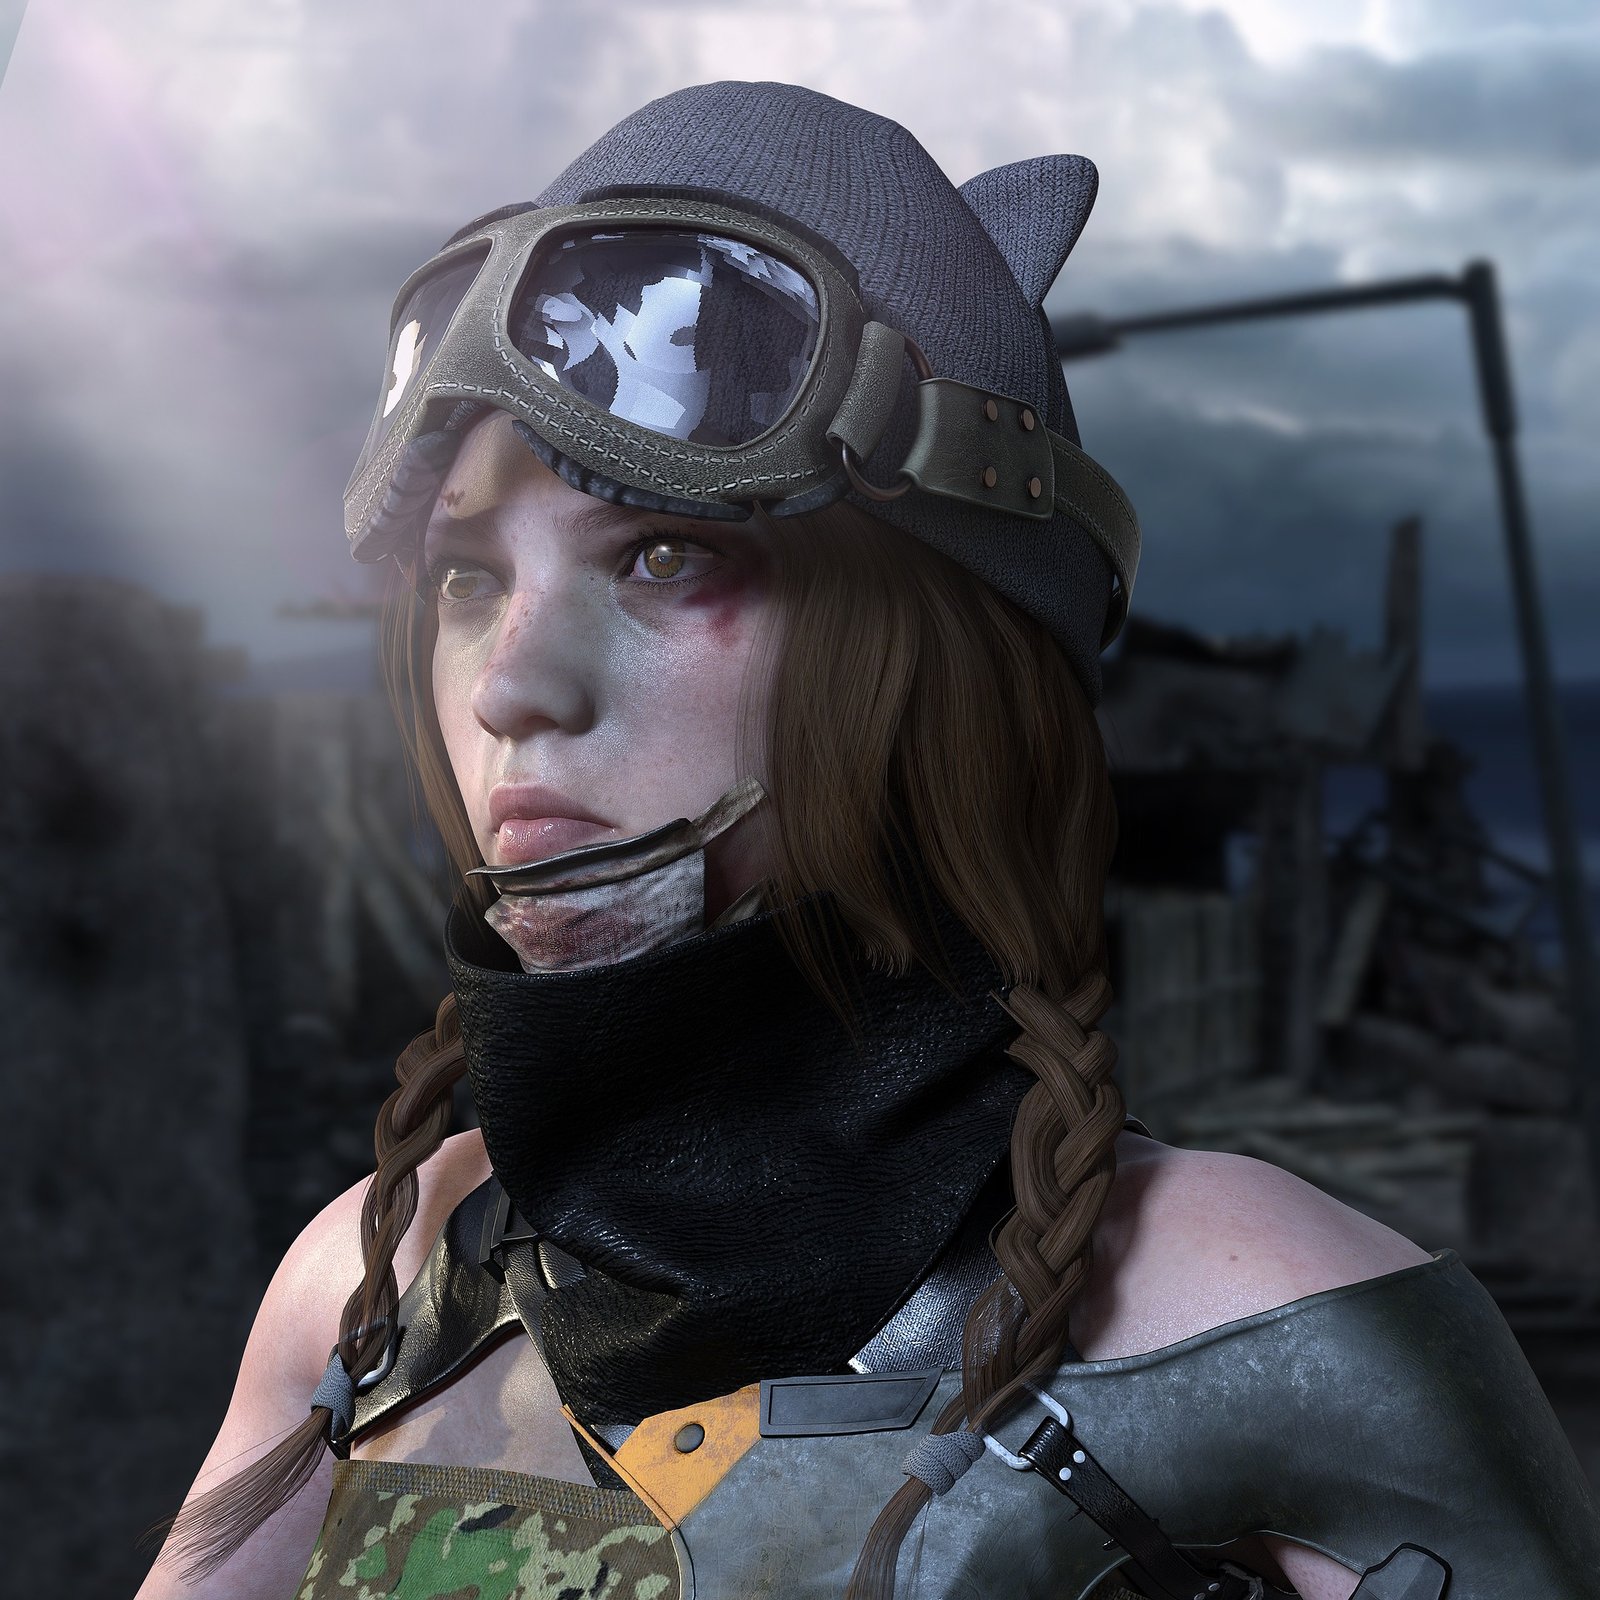 imagem de uma menna guerreira com trancas e mascara de piloto de aviao em guerra